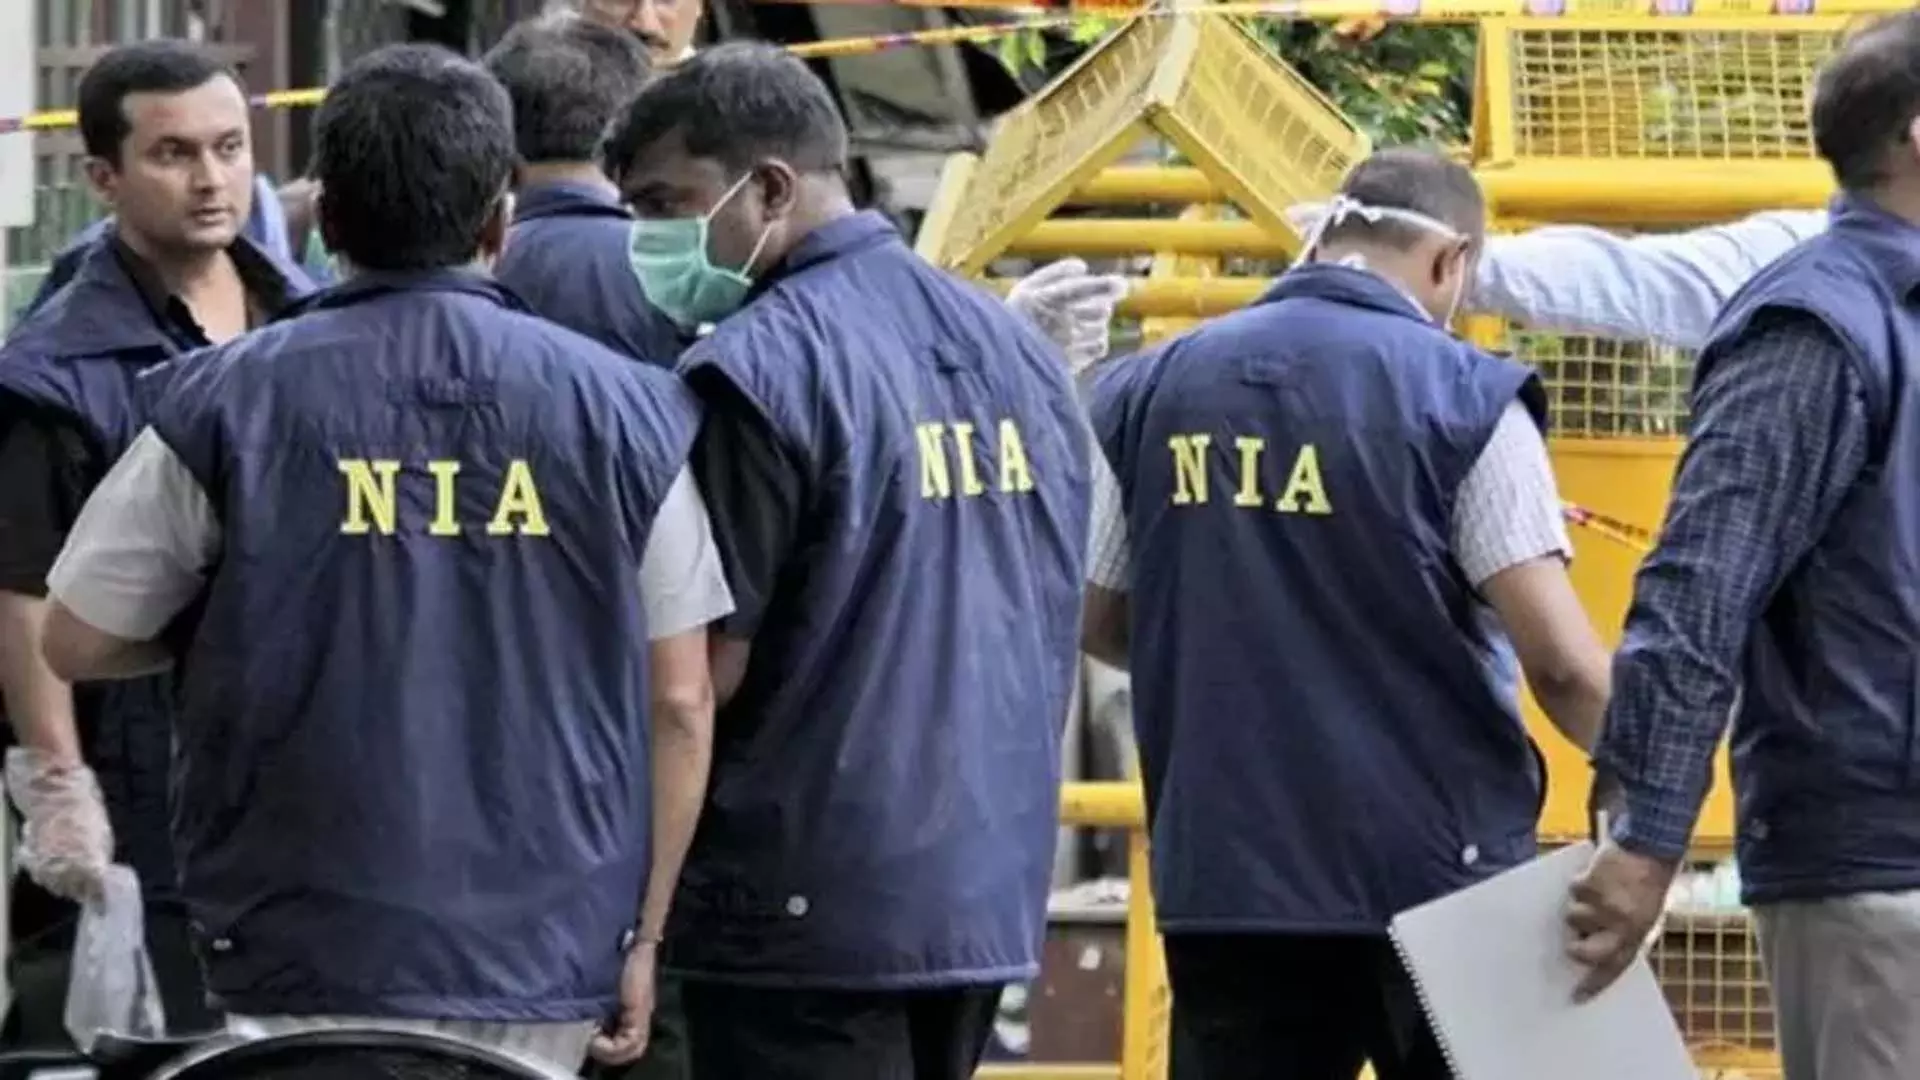 NIA ने चेन्नई और त्रिची समेत तमिलनाडु में 12 स्थानों पर छापे मारे